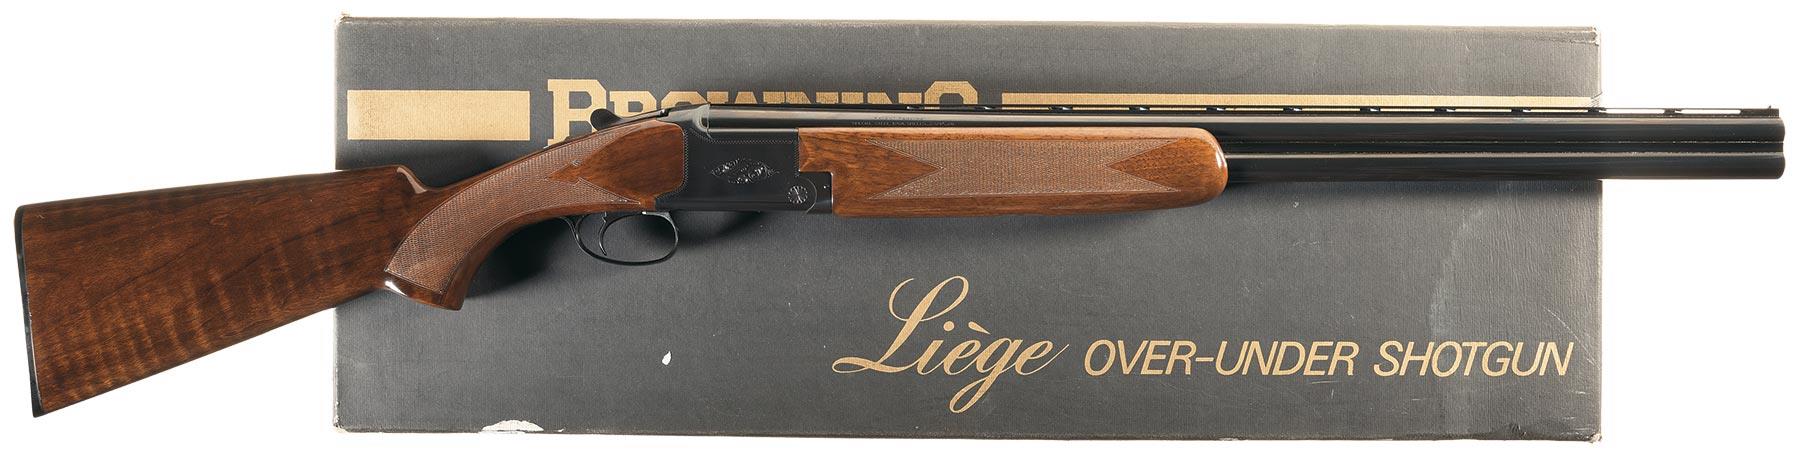 Liege Shotgun Serial Numbers